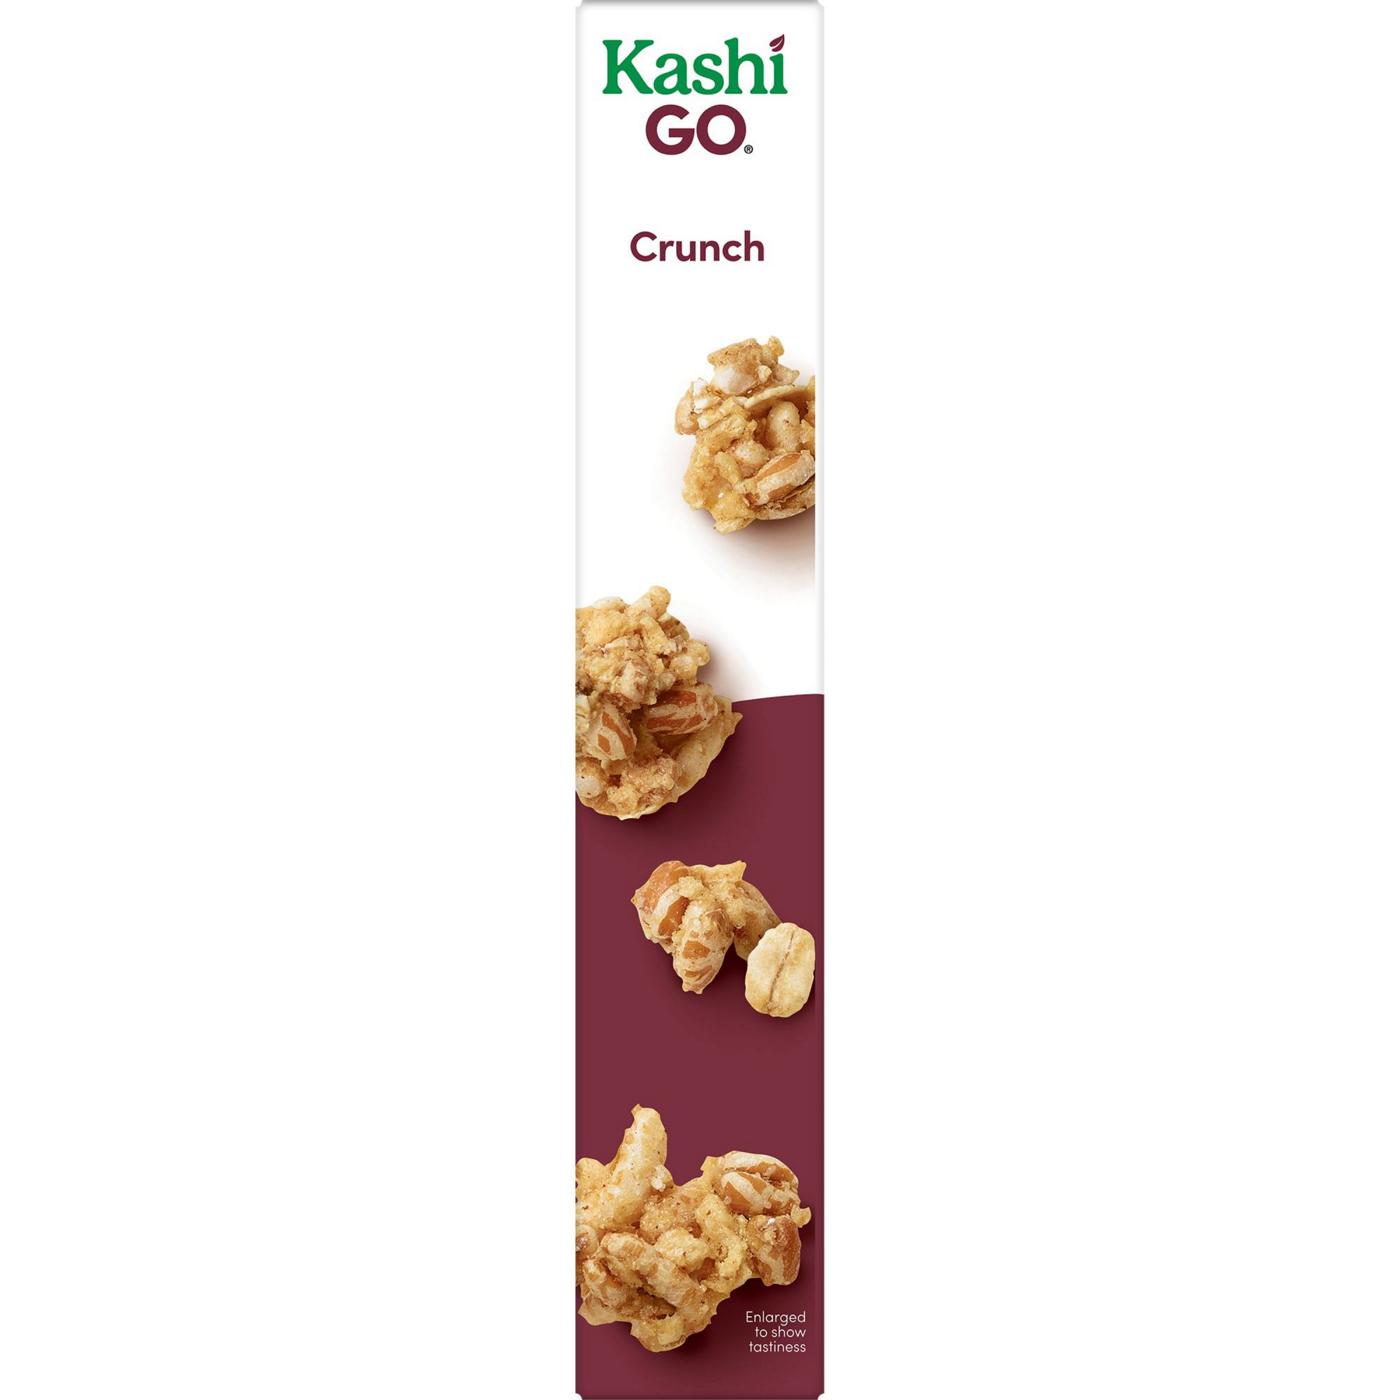 Kashi GO Crunch Breakfast Cereal; image 10 of 11